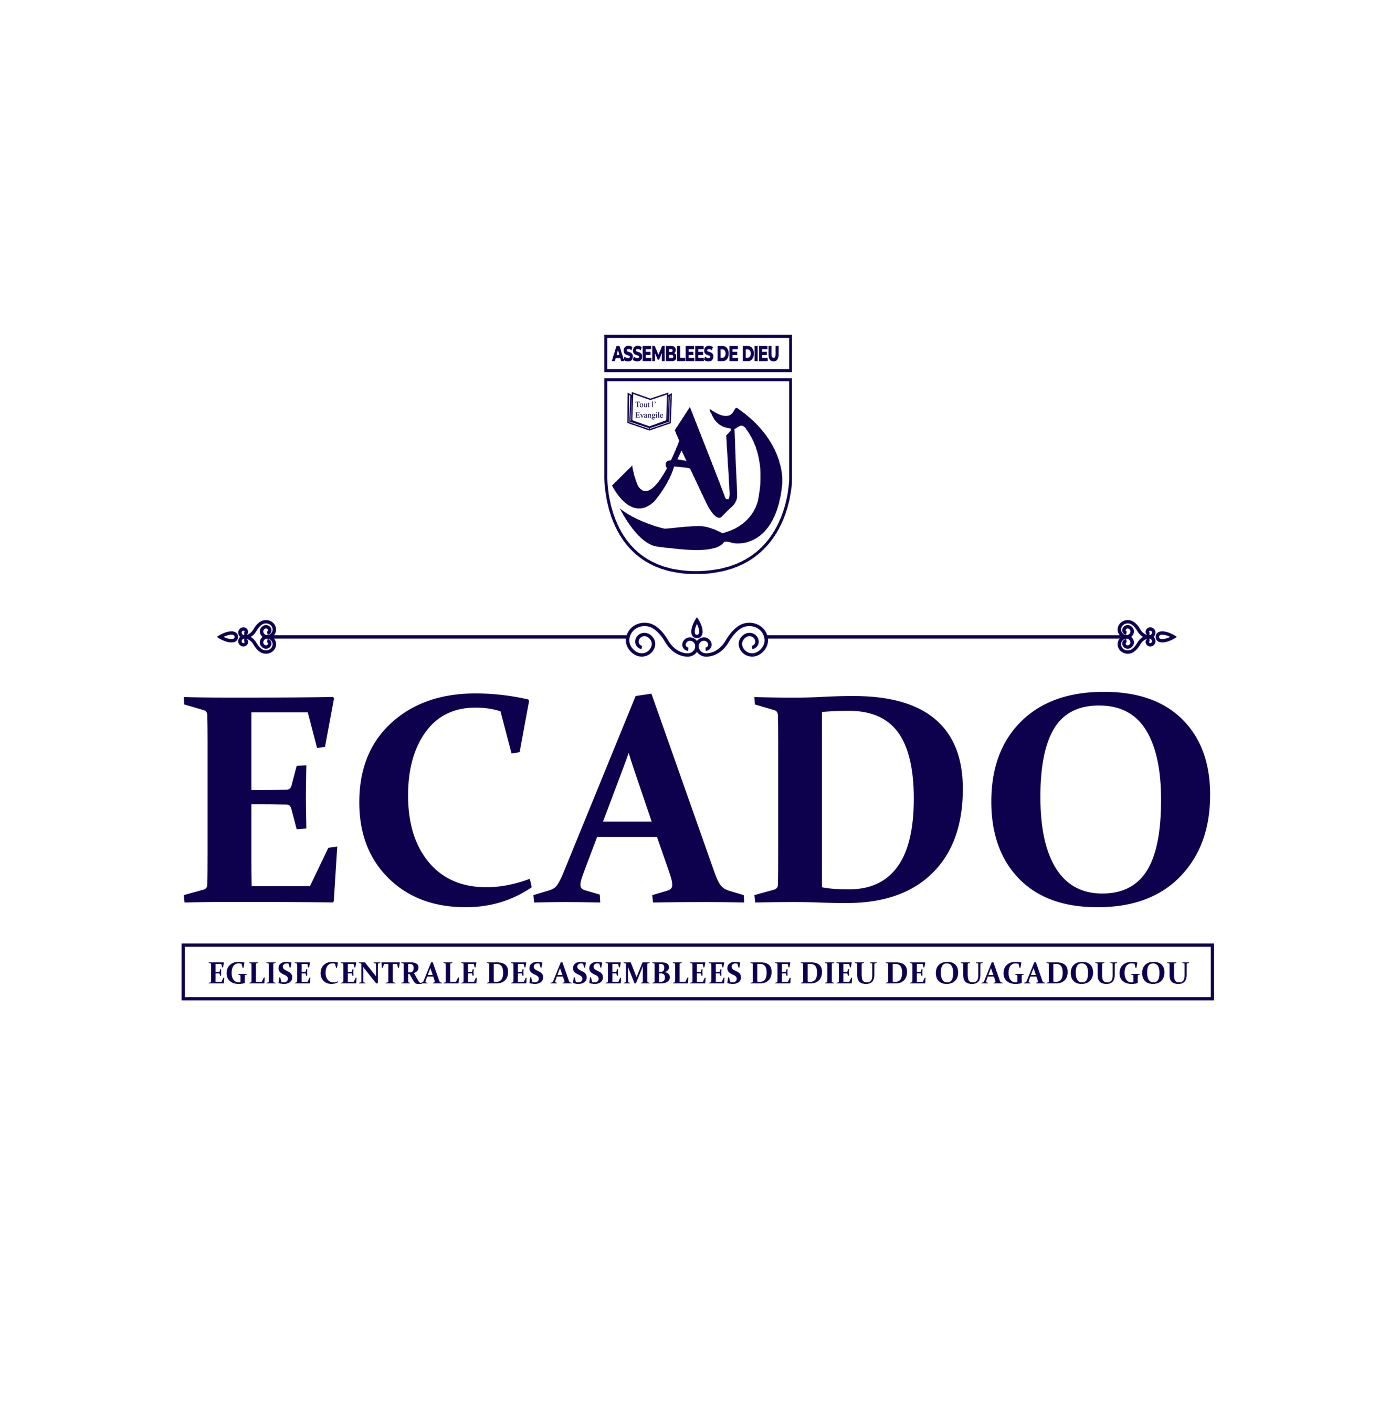 Logo ECADO